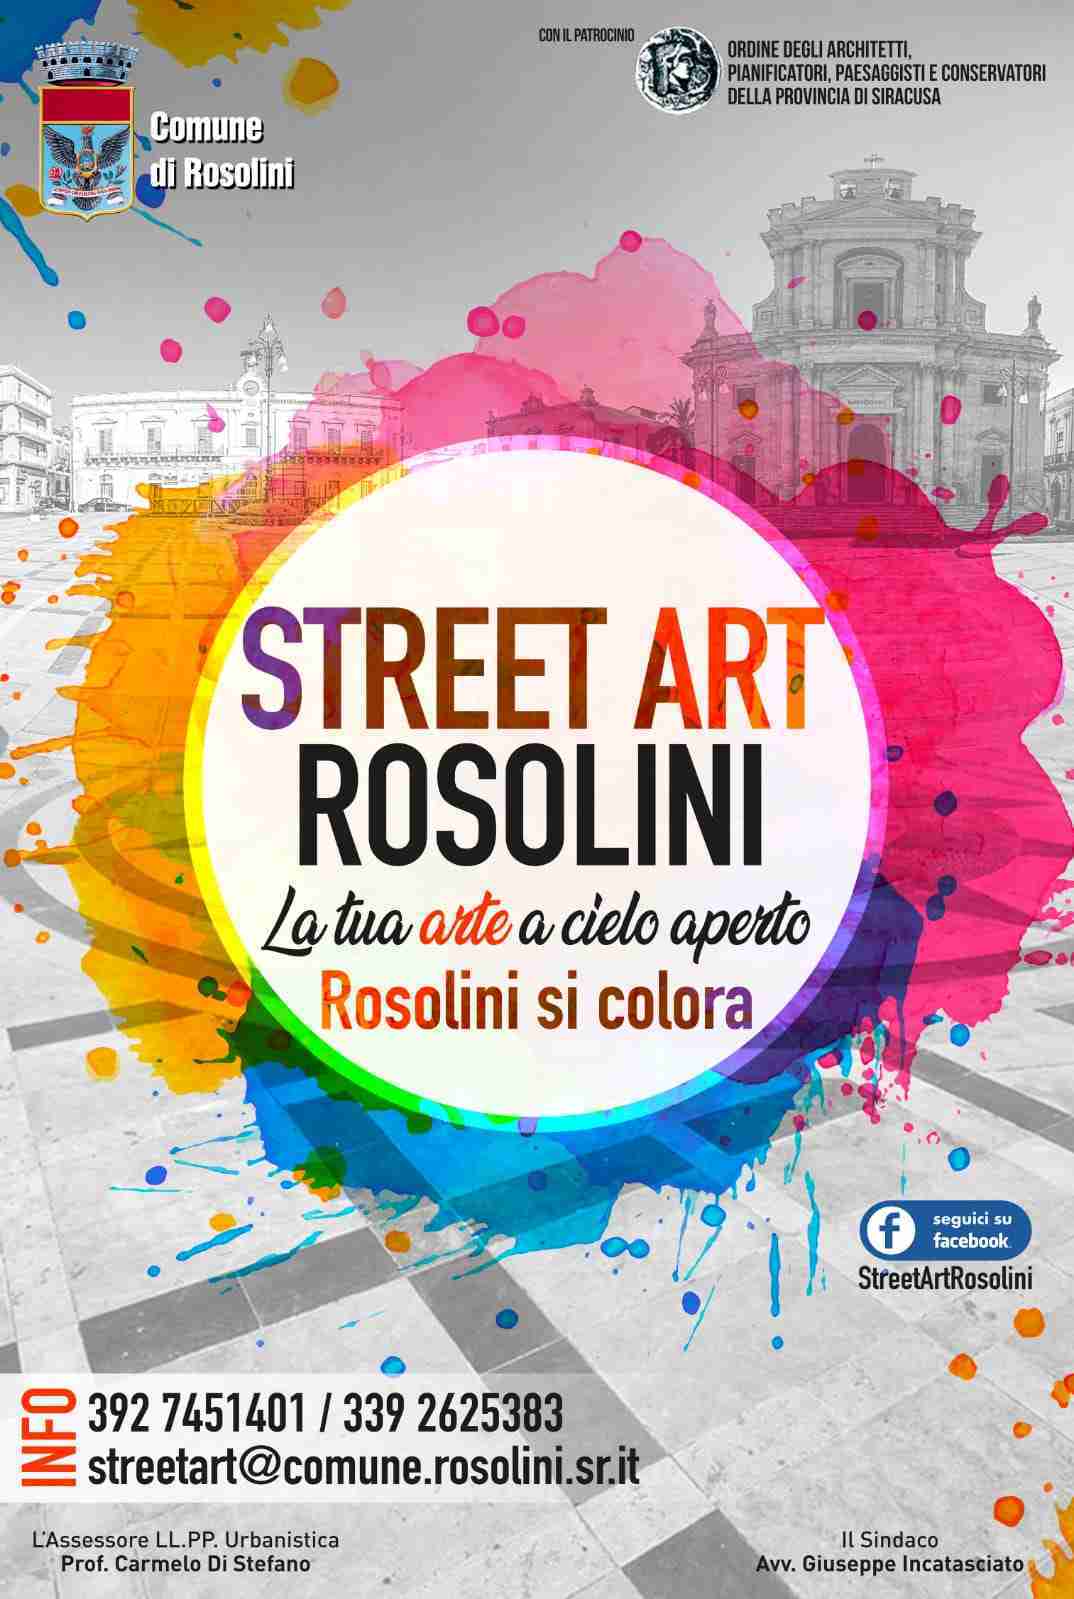 Street Art Rosolini: richieste di partecipazione entro il 31 marzo